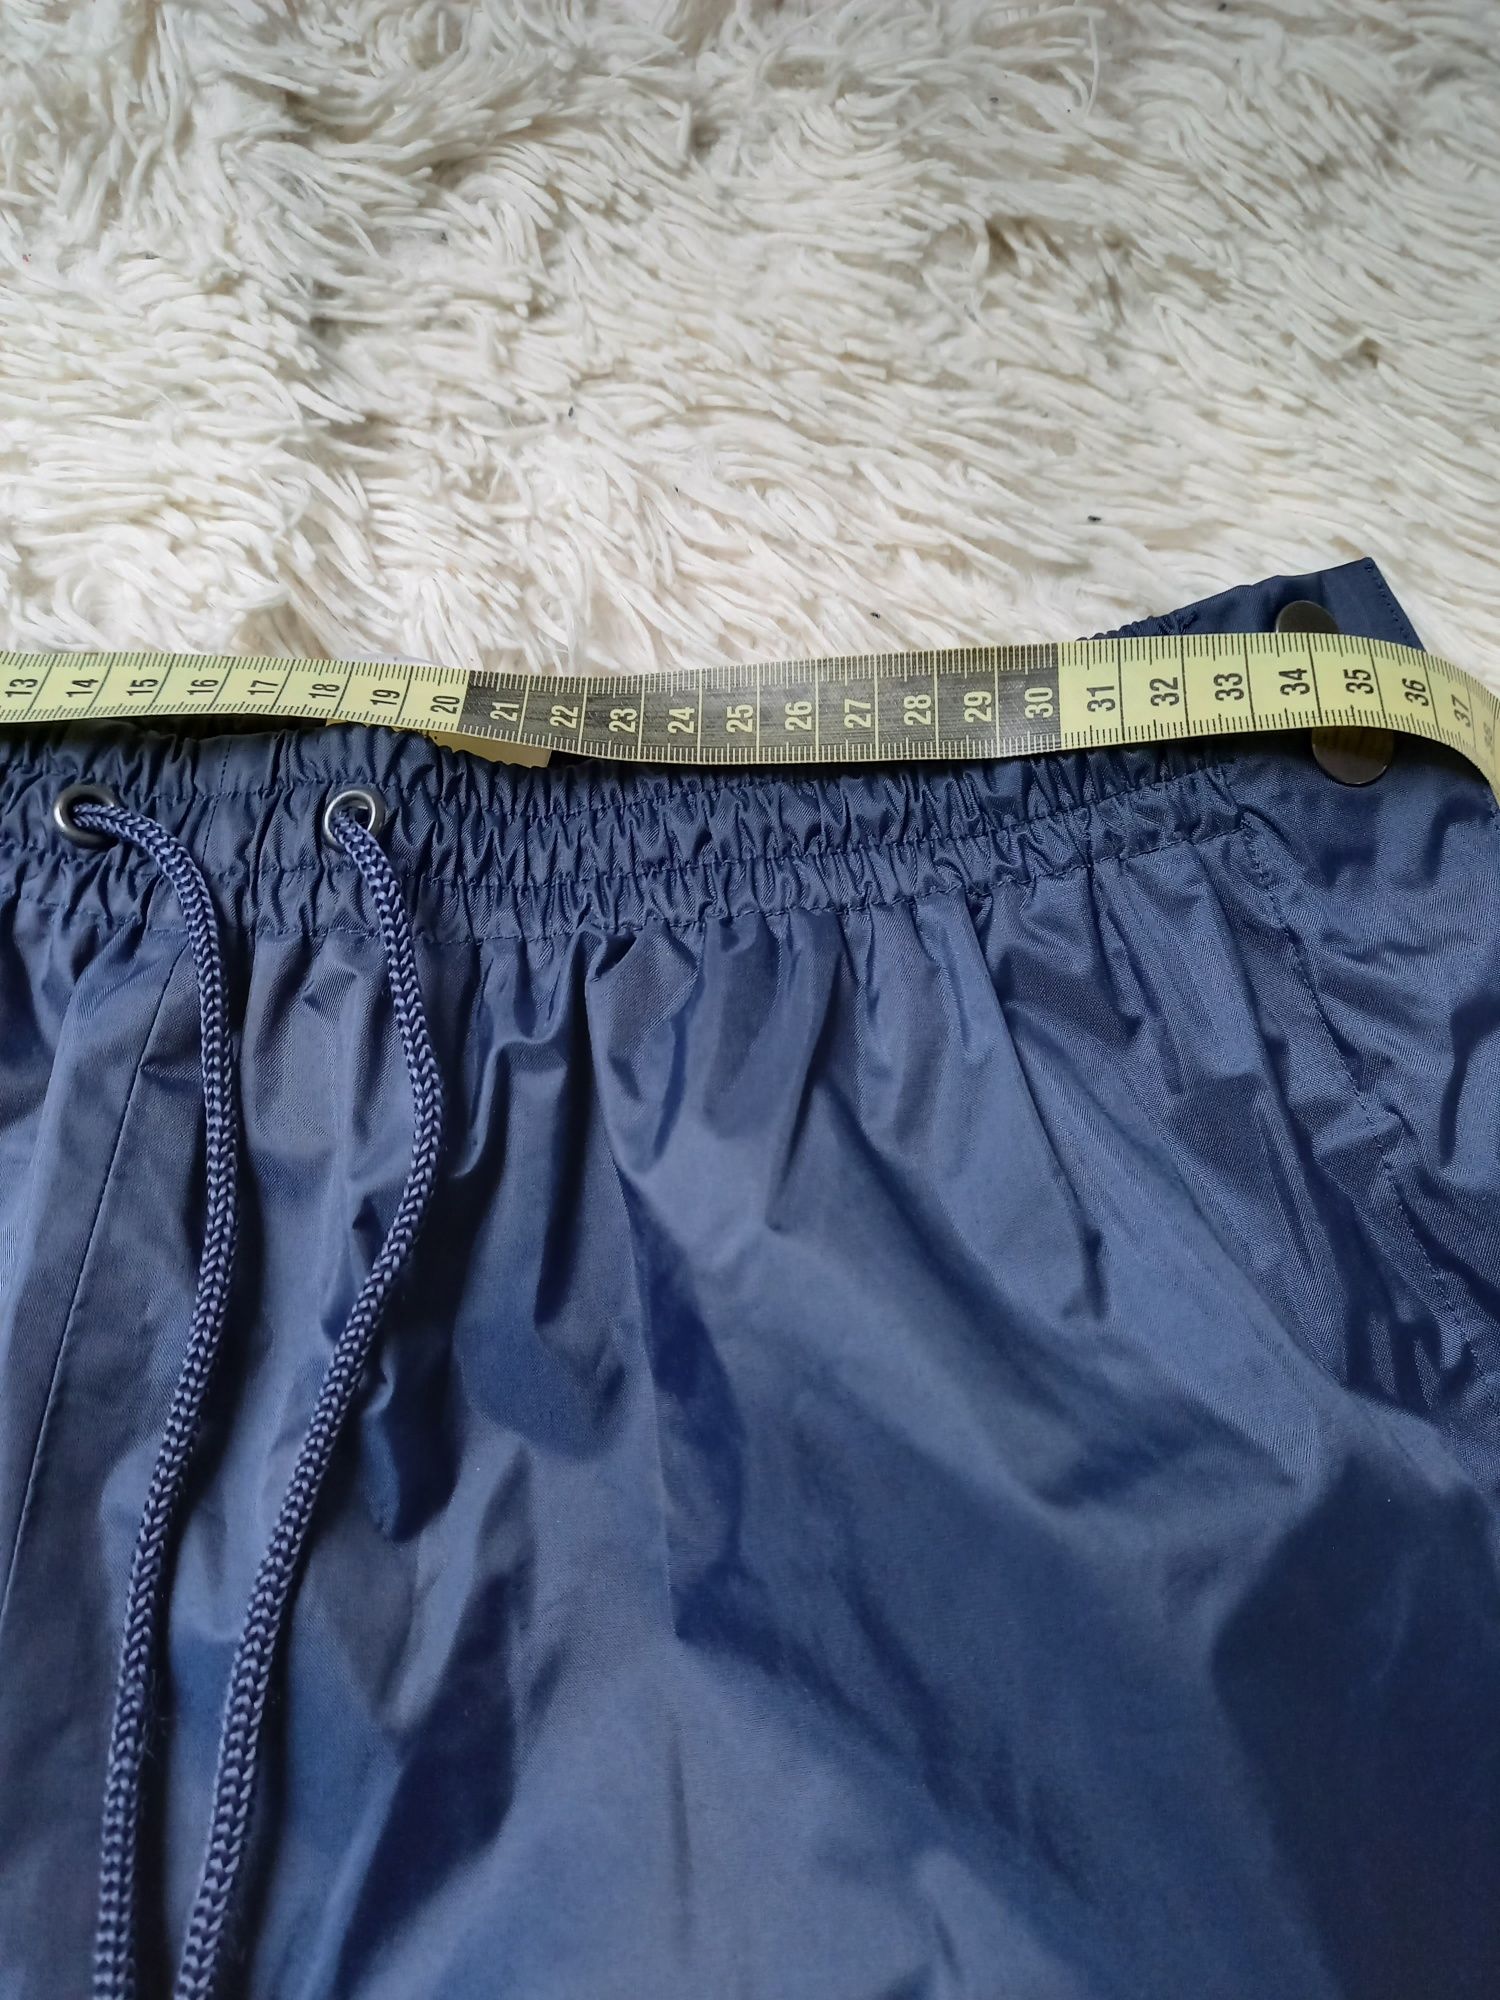 Spodnie narciarskie ortalionowe niebieskie męskie rozmiar M